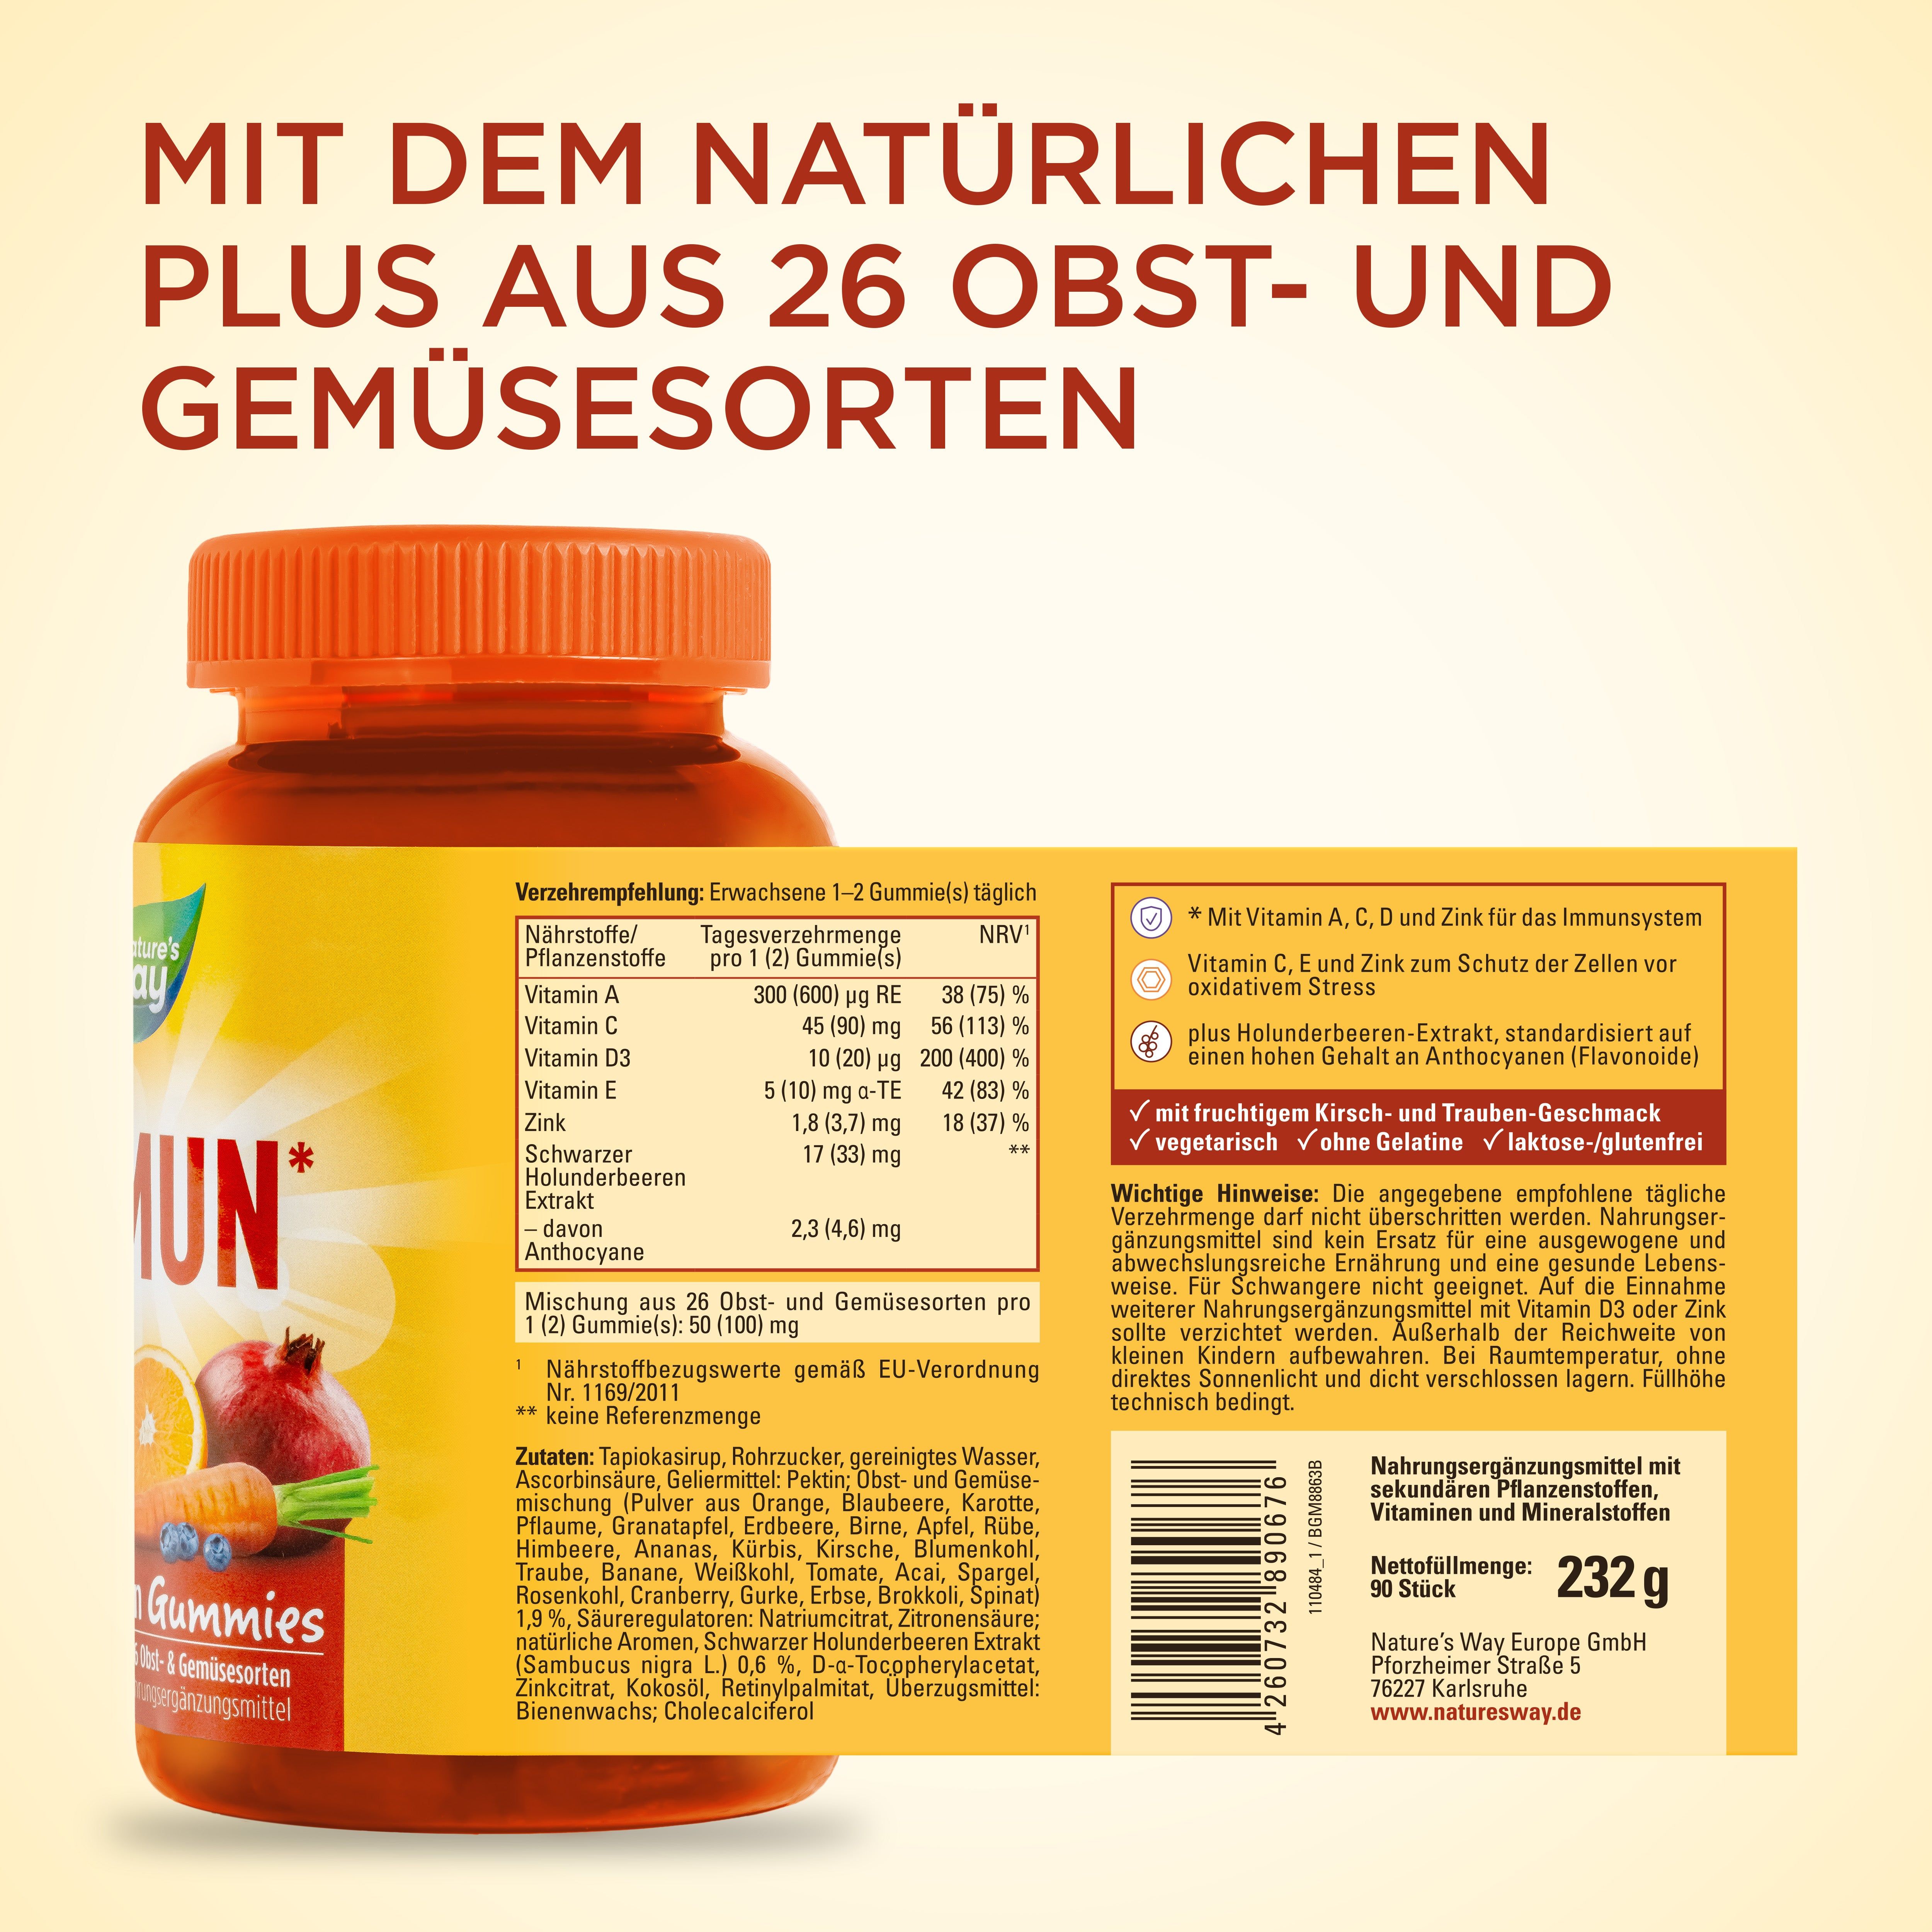 Nature's Way Immun Multivitamin Gummies 90Stk - 6er Bundle